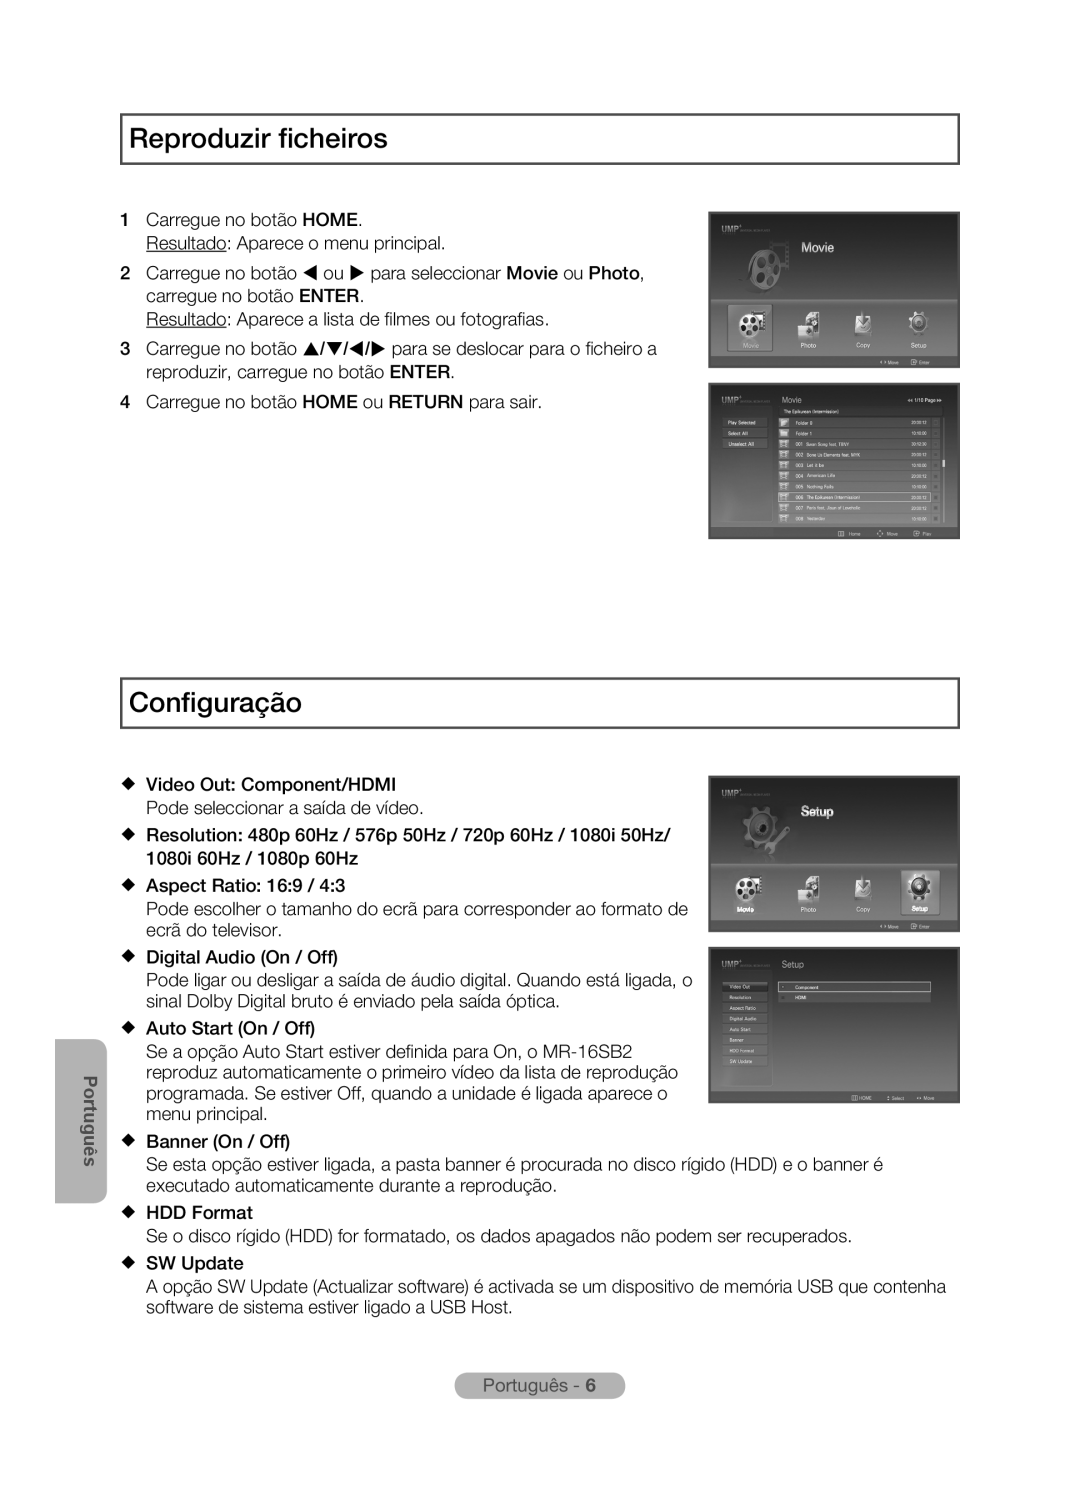 Samsung MR-16SB2 manual Reproduzir ficheiros, Configuração, Português -  